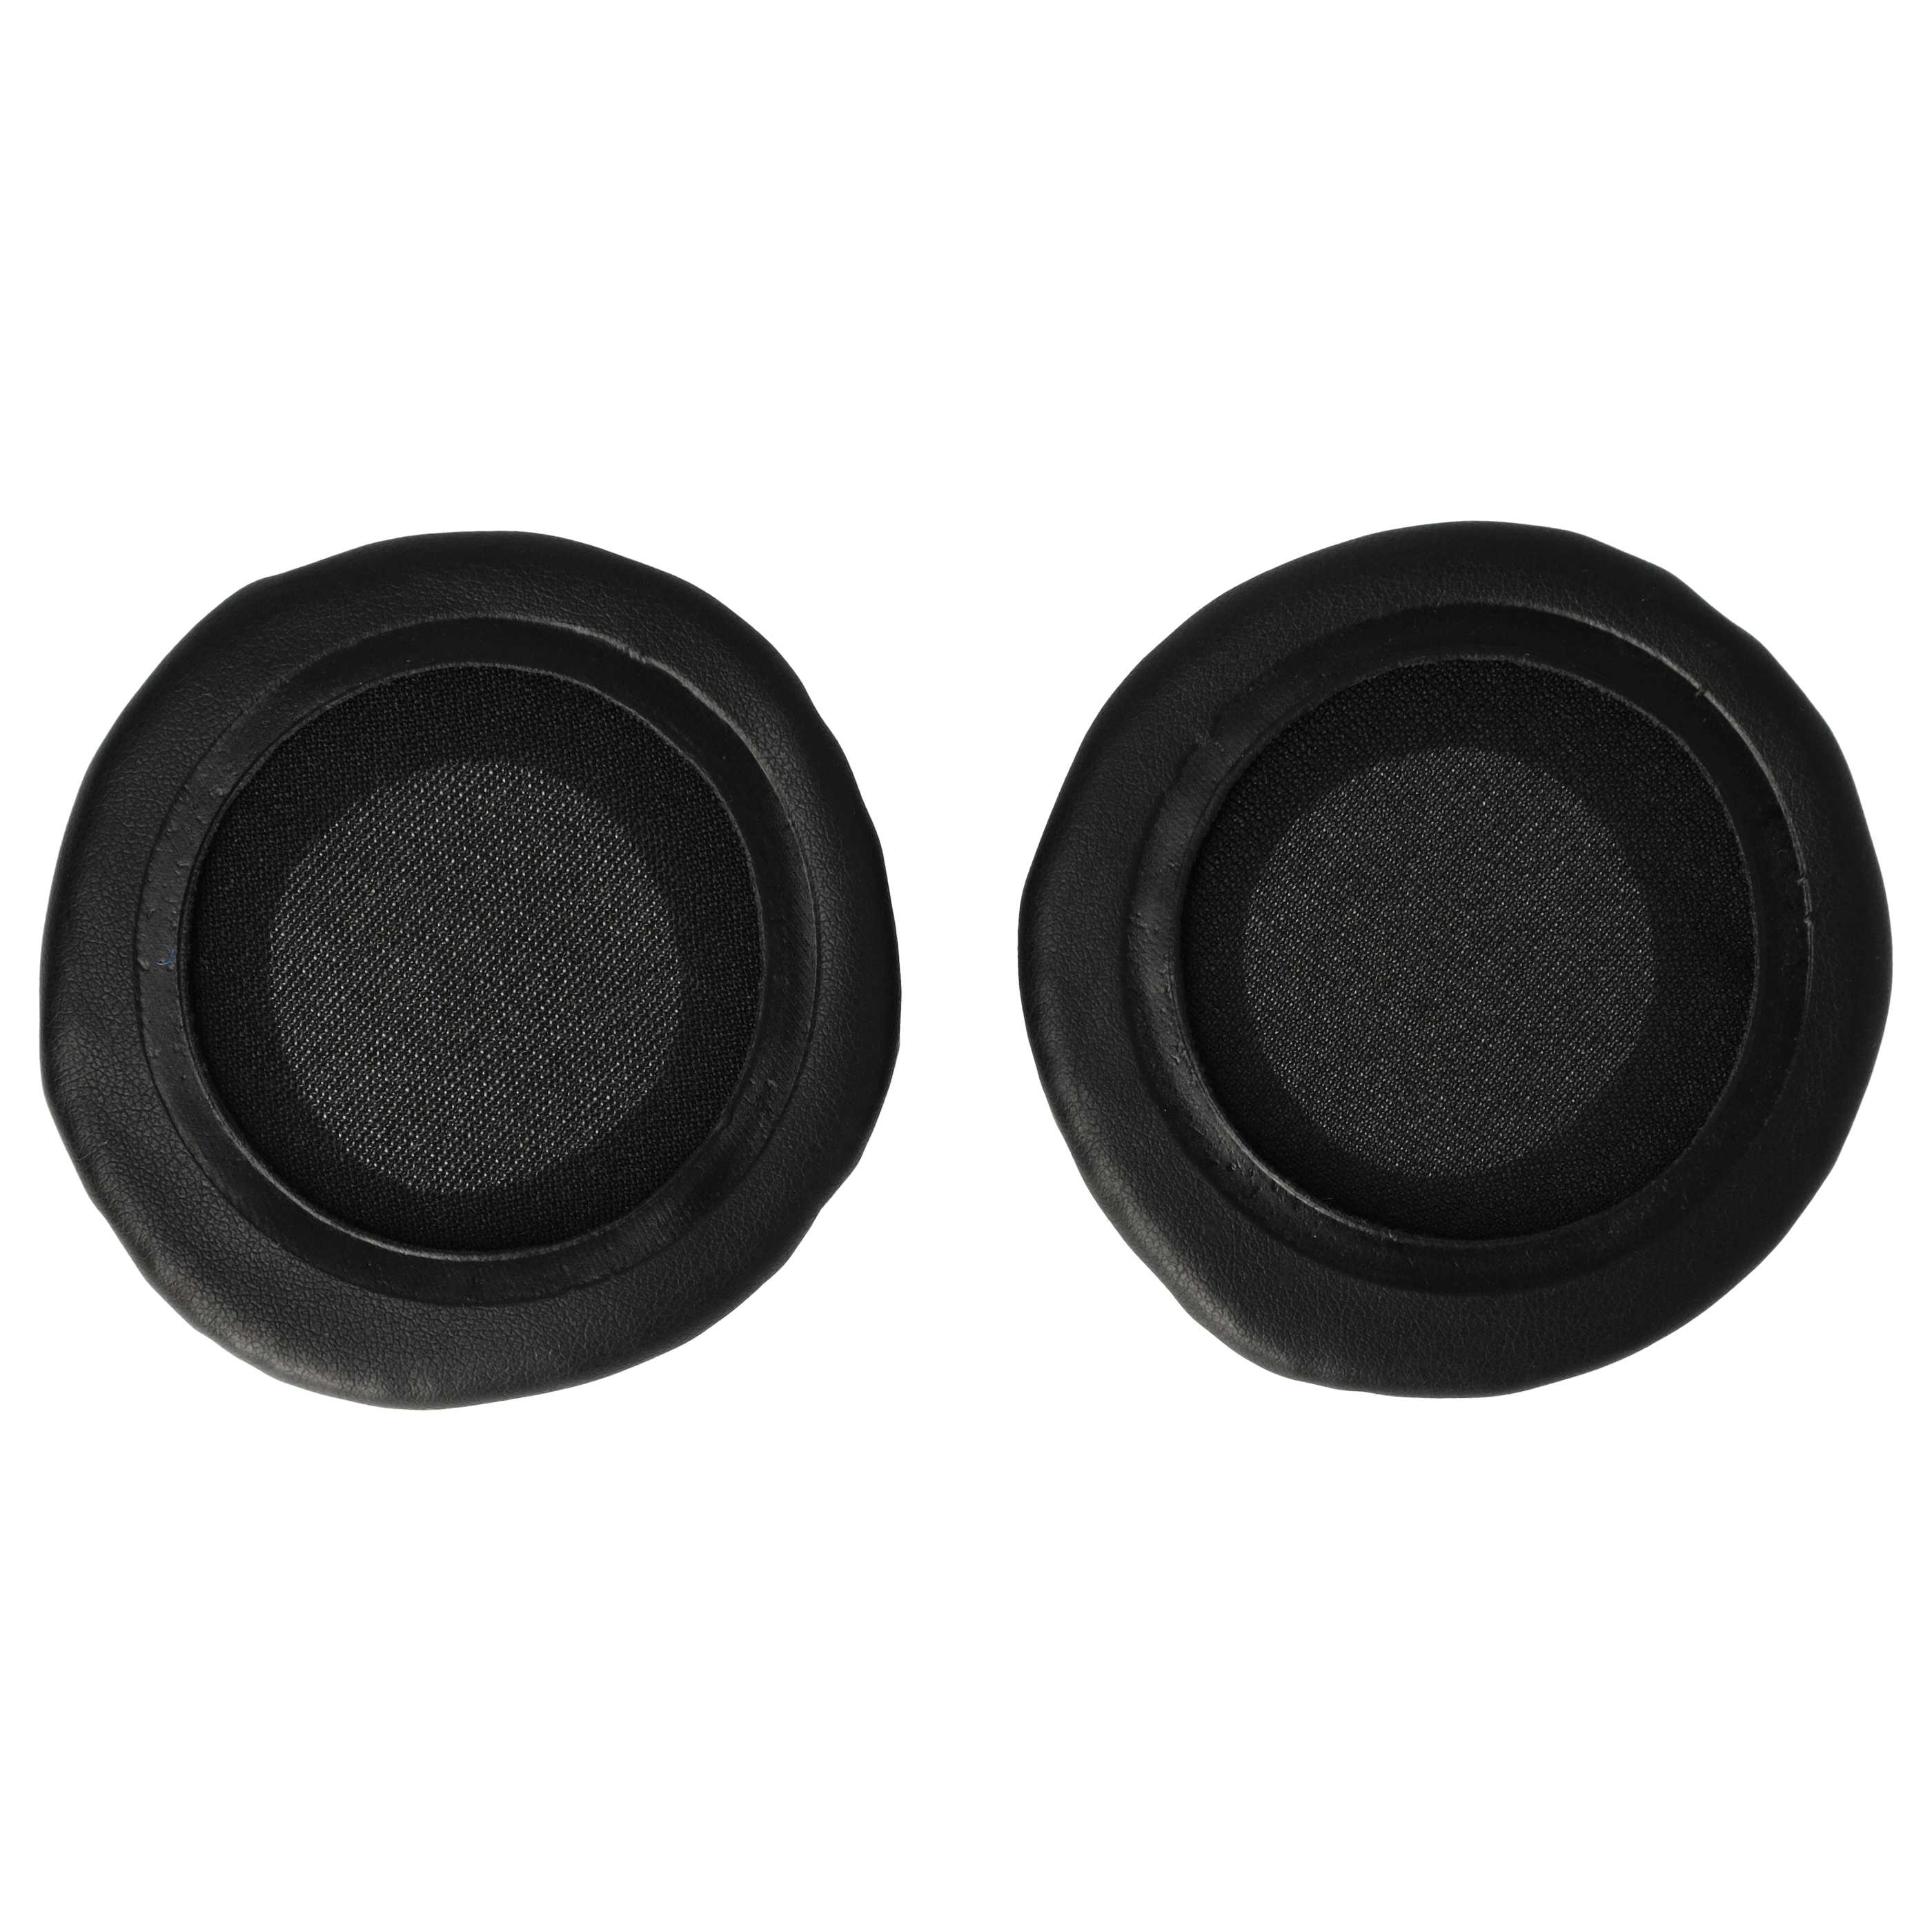 2x Coussinets d'oreille 6,5cm pour casque écouteurs nécessitant des coussinets de 65 mm / t.Bone HD 660 et aut